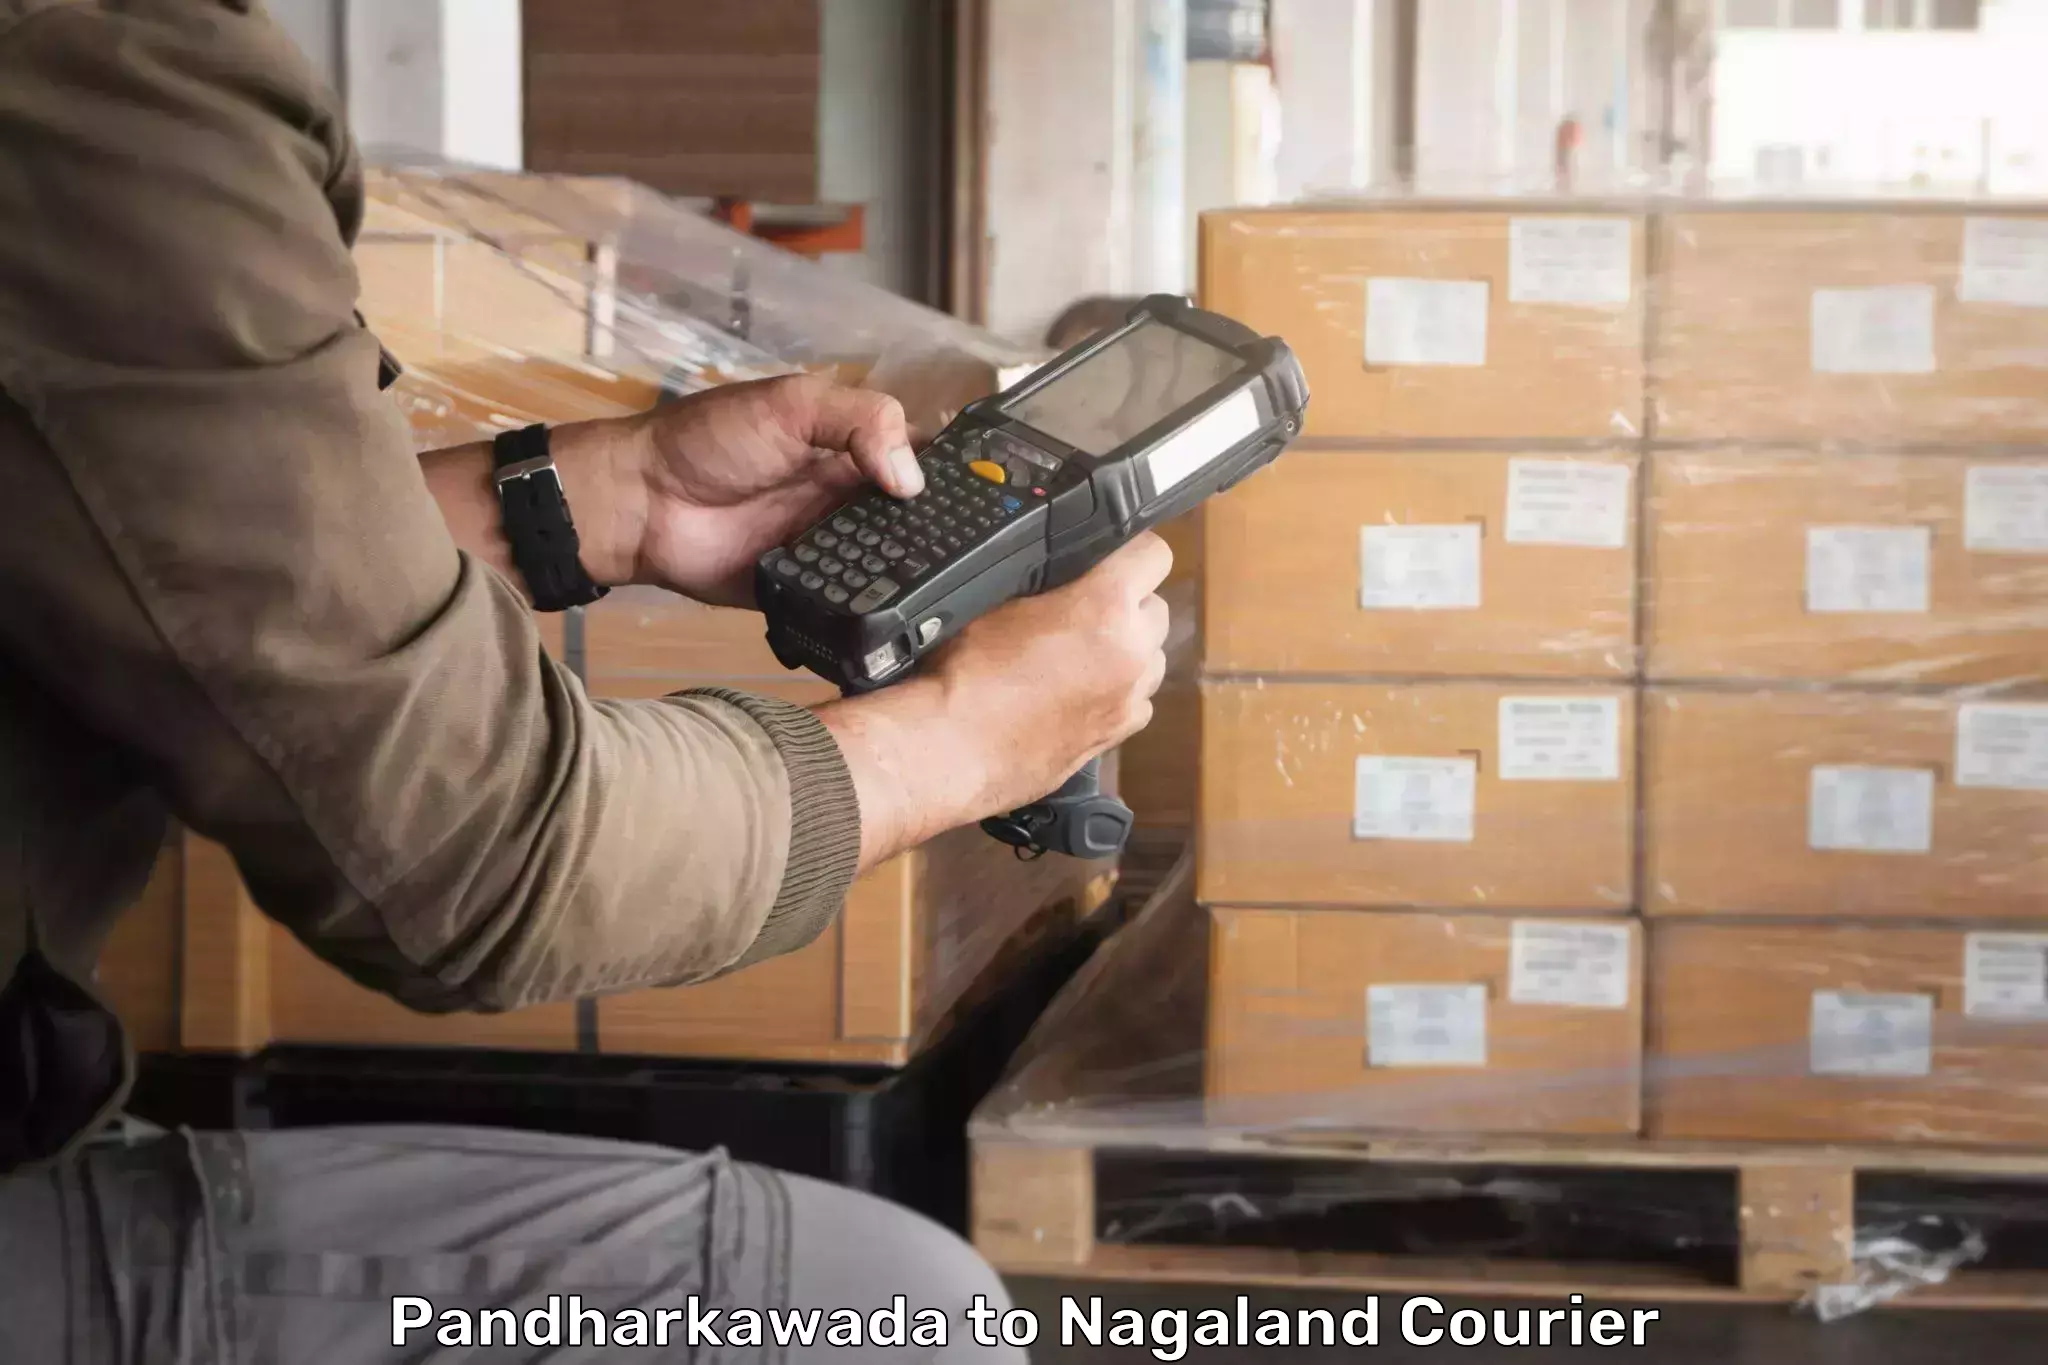 Efficient parcel service Pandharkawada to Dimapur